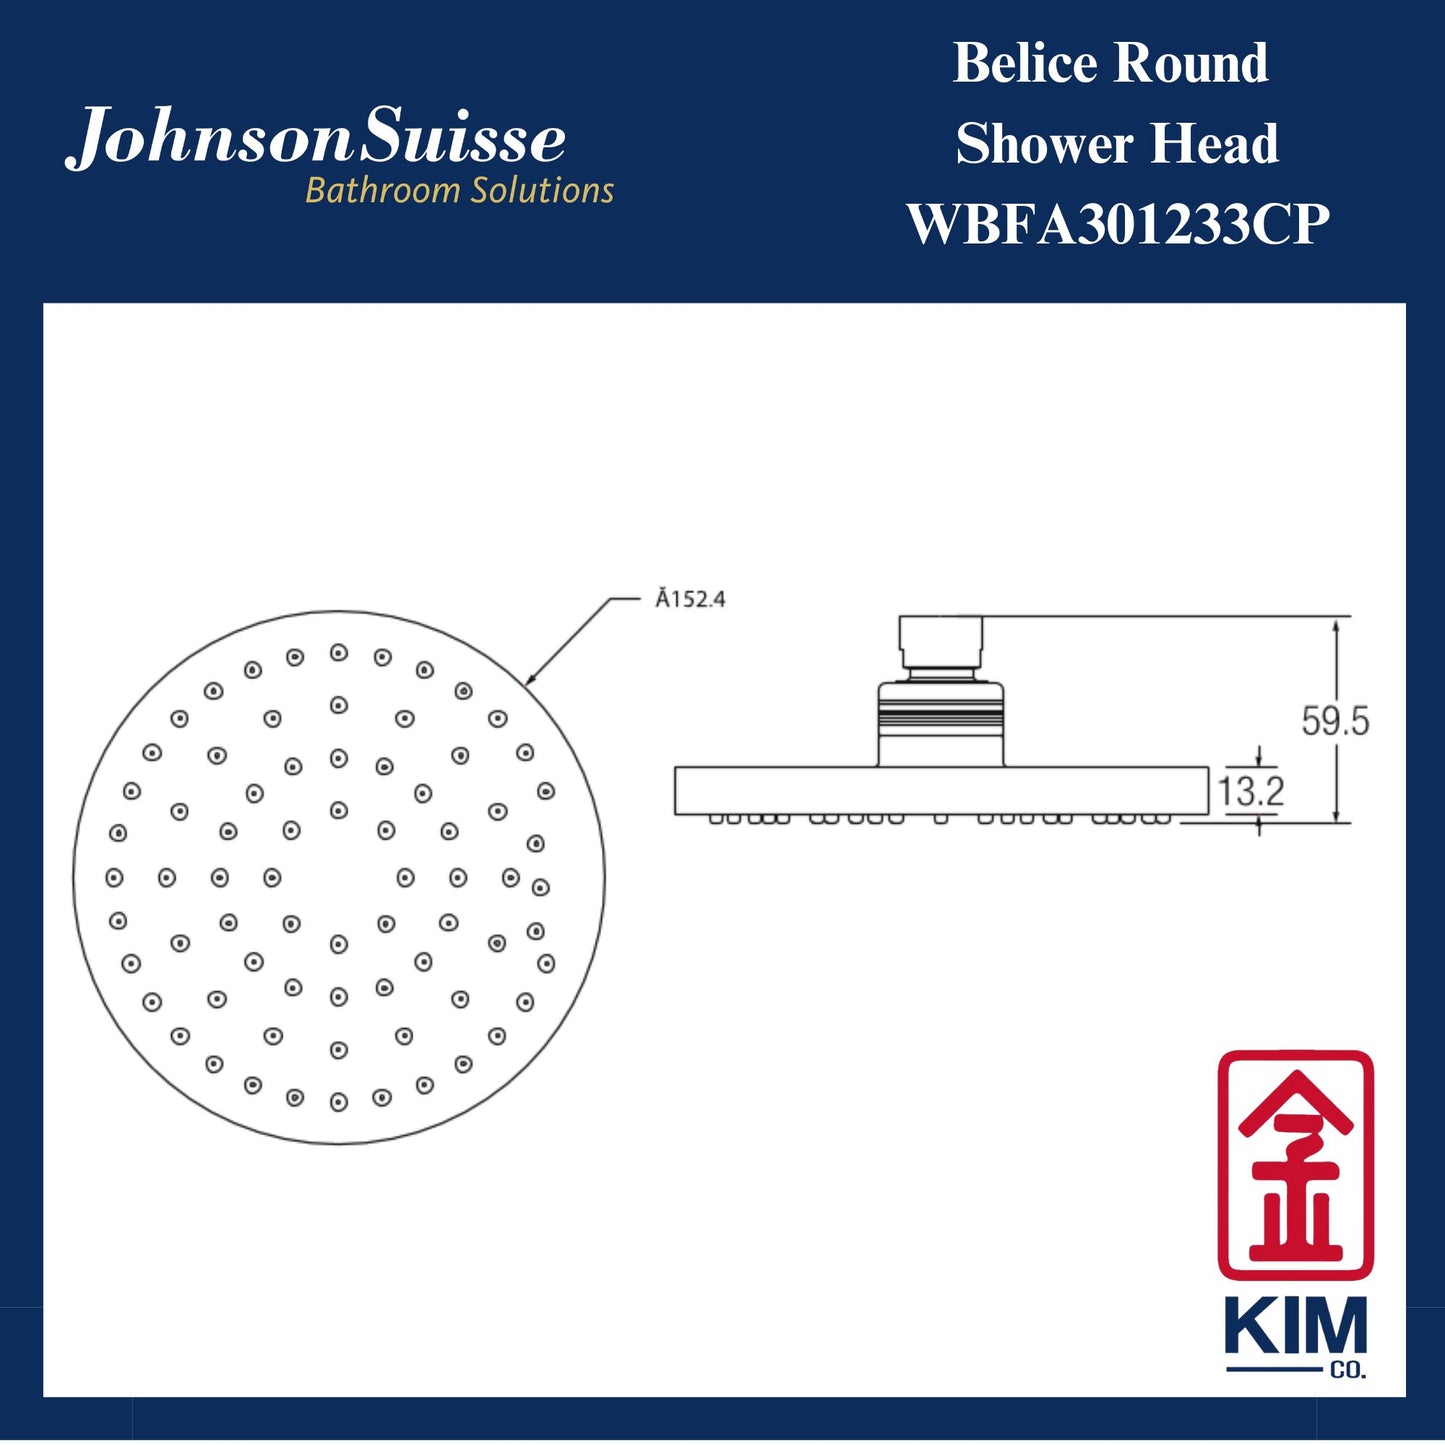 Johnson Suisse Belice Shower Head (WBFA301233CP)